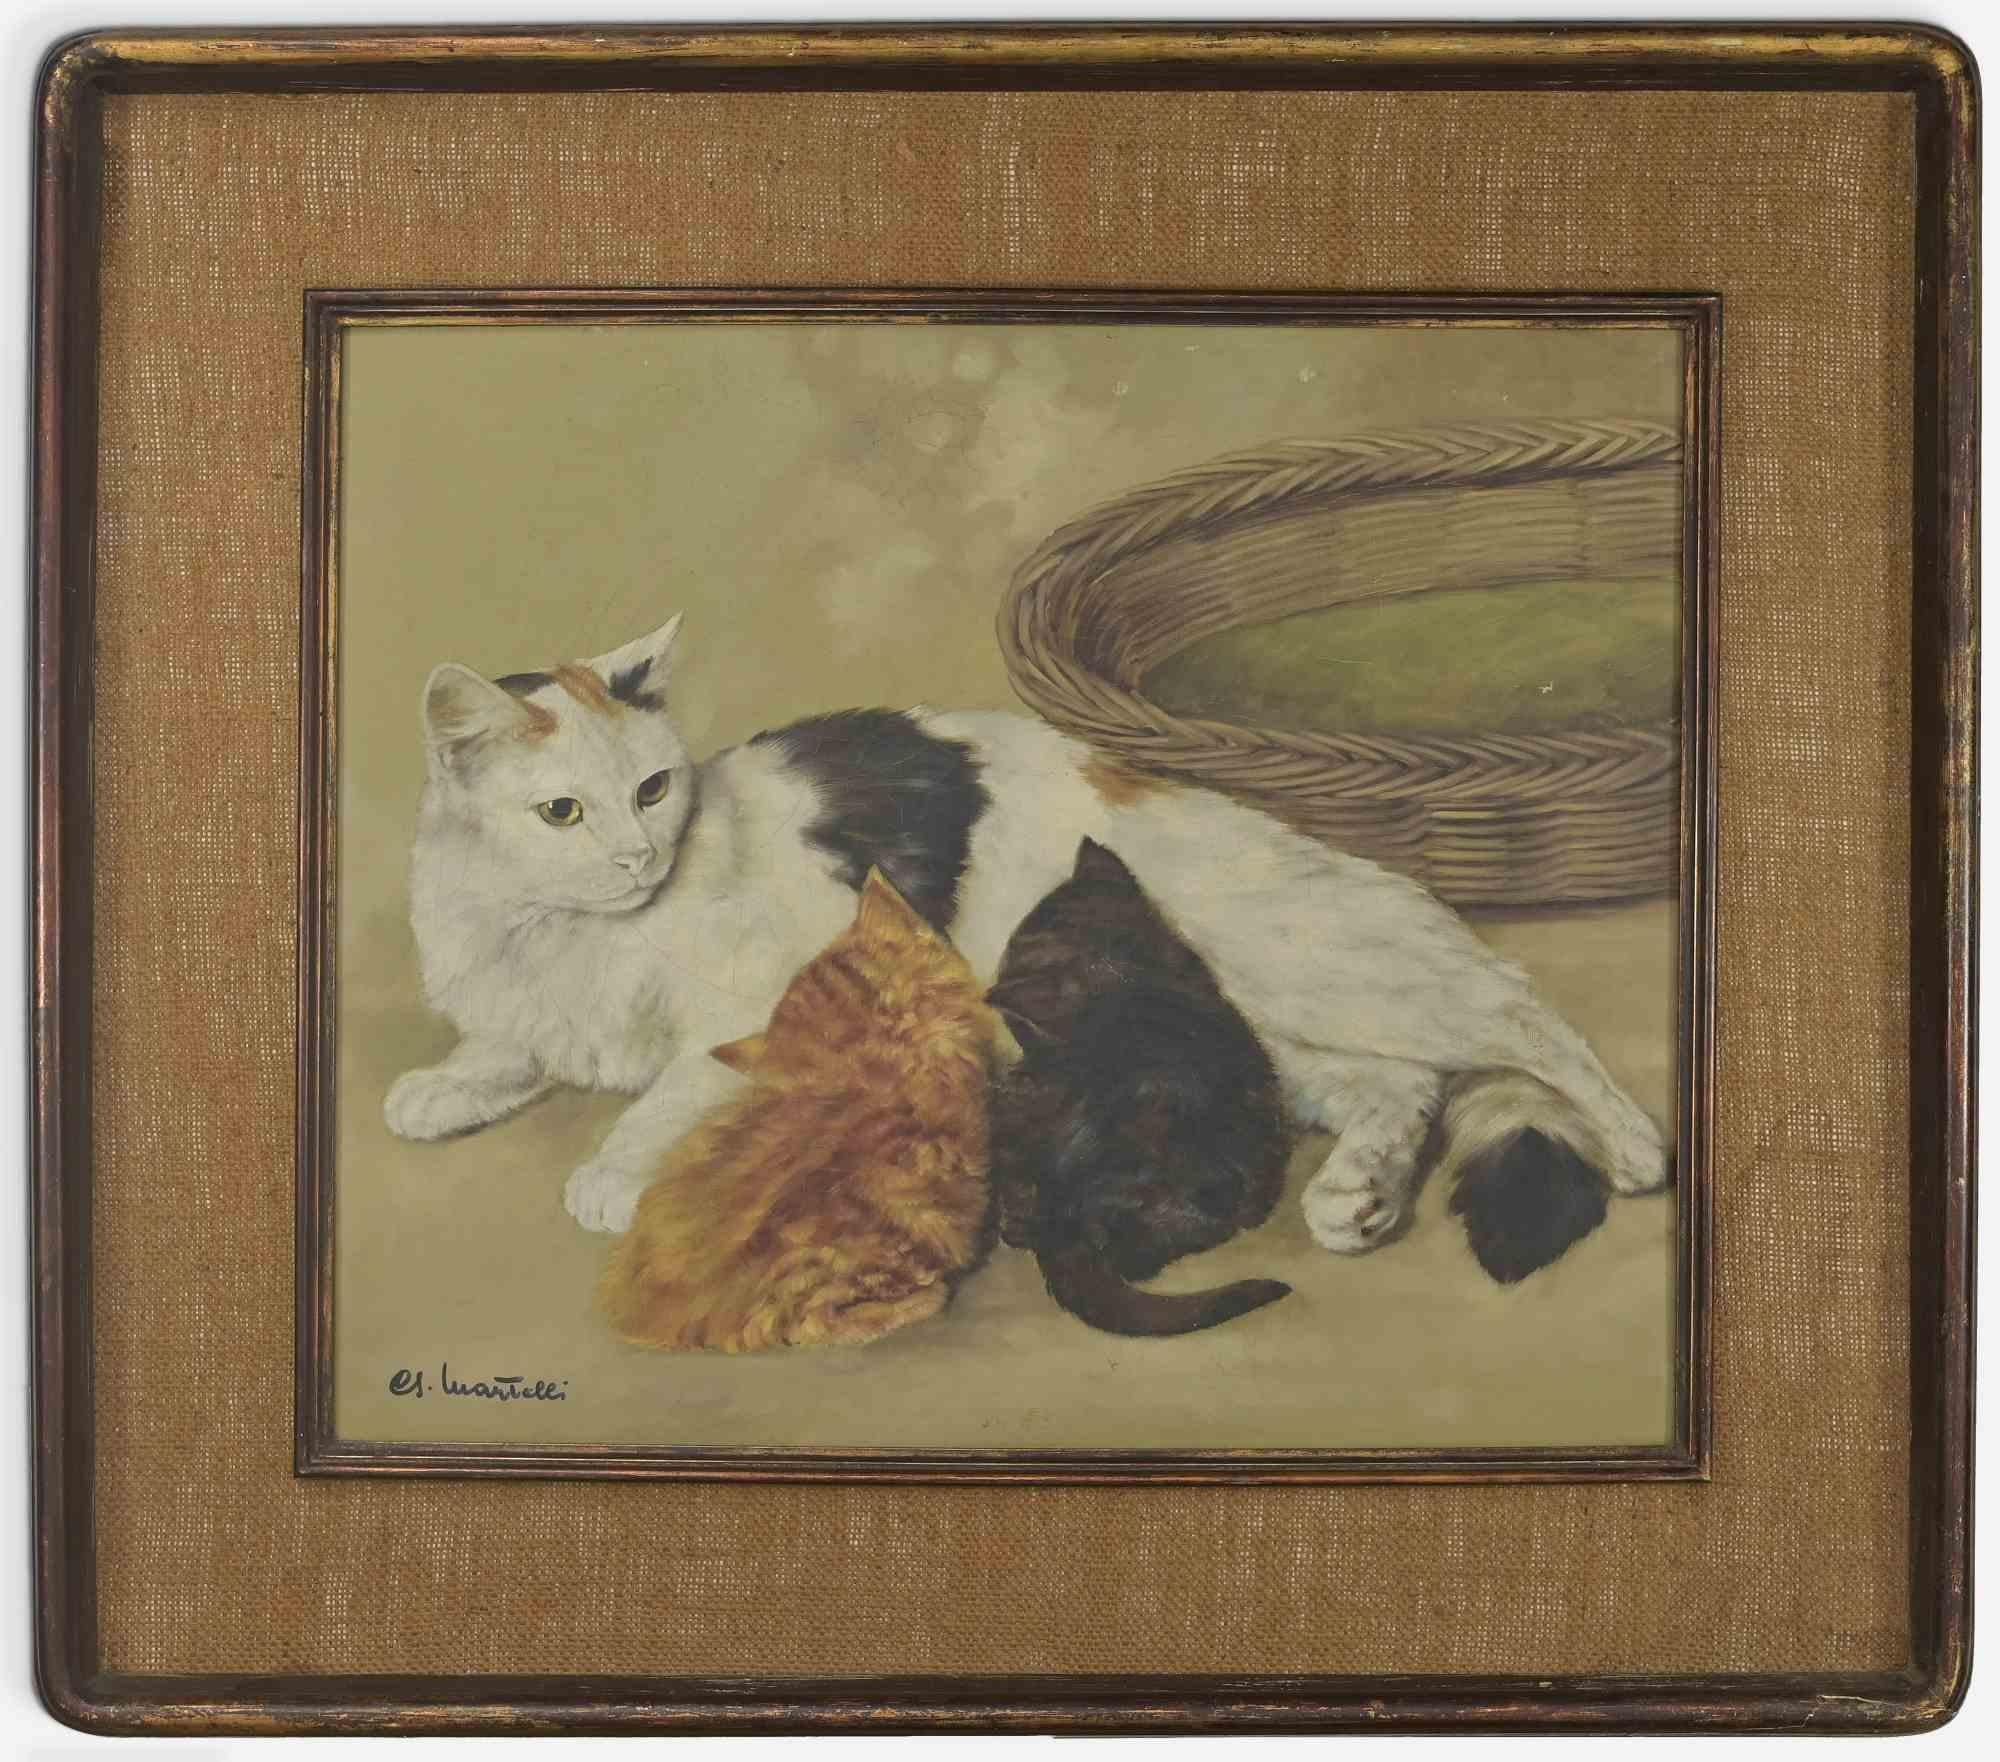 Cats ist ein Original-Ölgemälde auf Leinwand von Giancarlo Martelli realisiert  (Novara, 1926)

Inklusive Rahmen 6x75x85 cm.

Rechts unten handsigniert.

Guter Zustand mit Ausnahme einiger Stockflecken auf der Rückseite, etwas Farbverlust. 

 